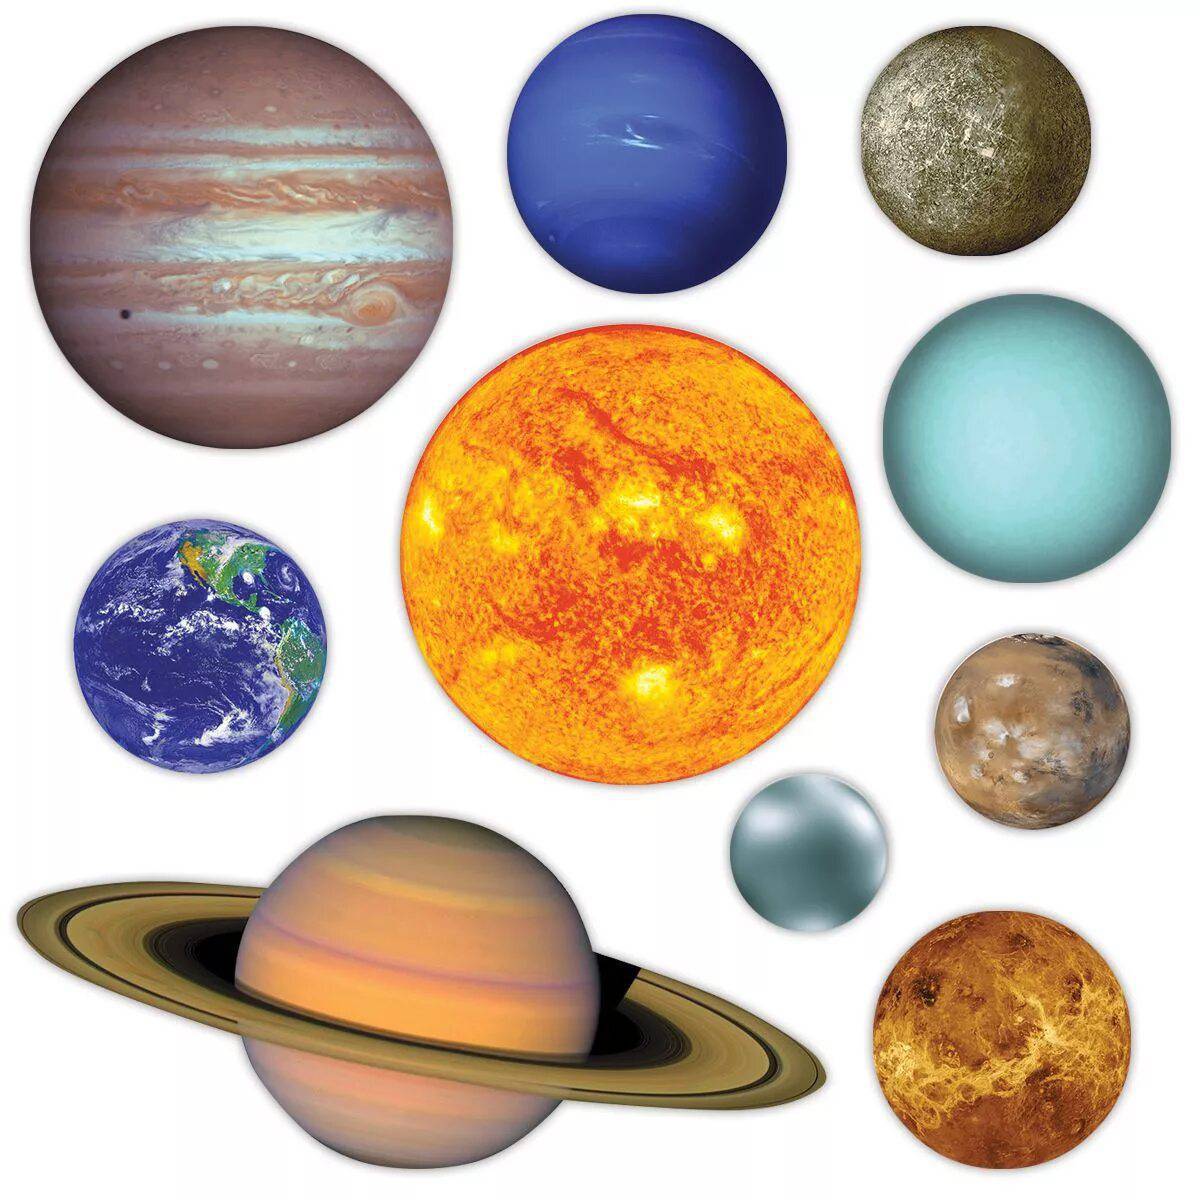 Картинки планеты солнечной системы для детей распечатать. Планеты солнечной системы. Планеты солнечной системы картинки. Планеты солнечной системы для детей картинки. Планеты для дошкольников.